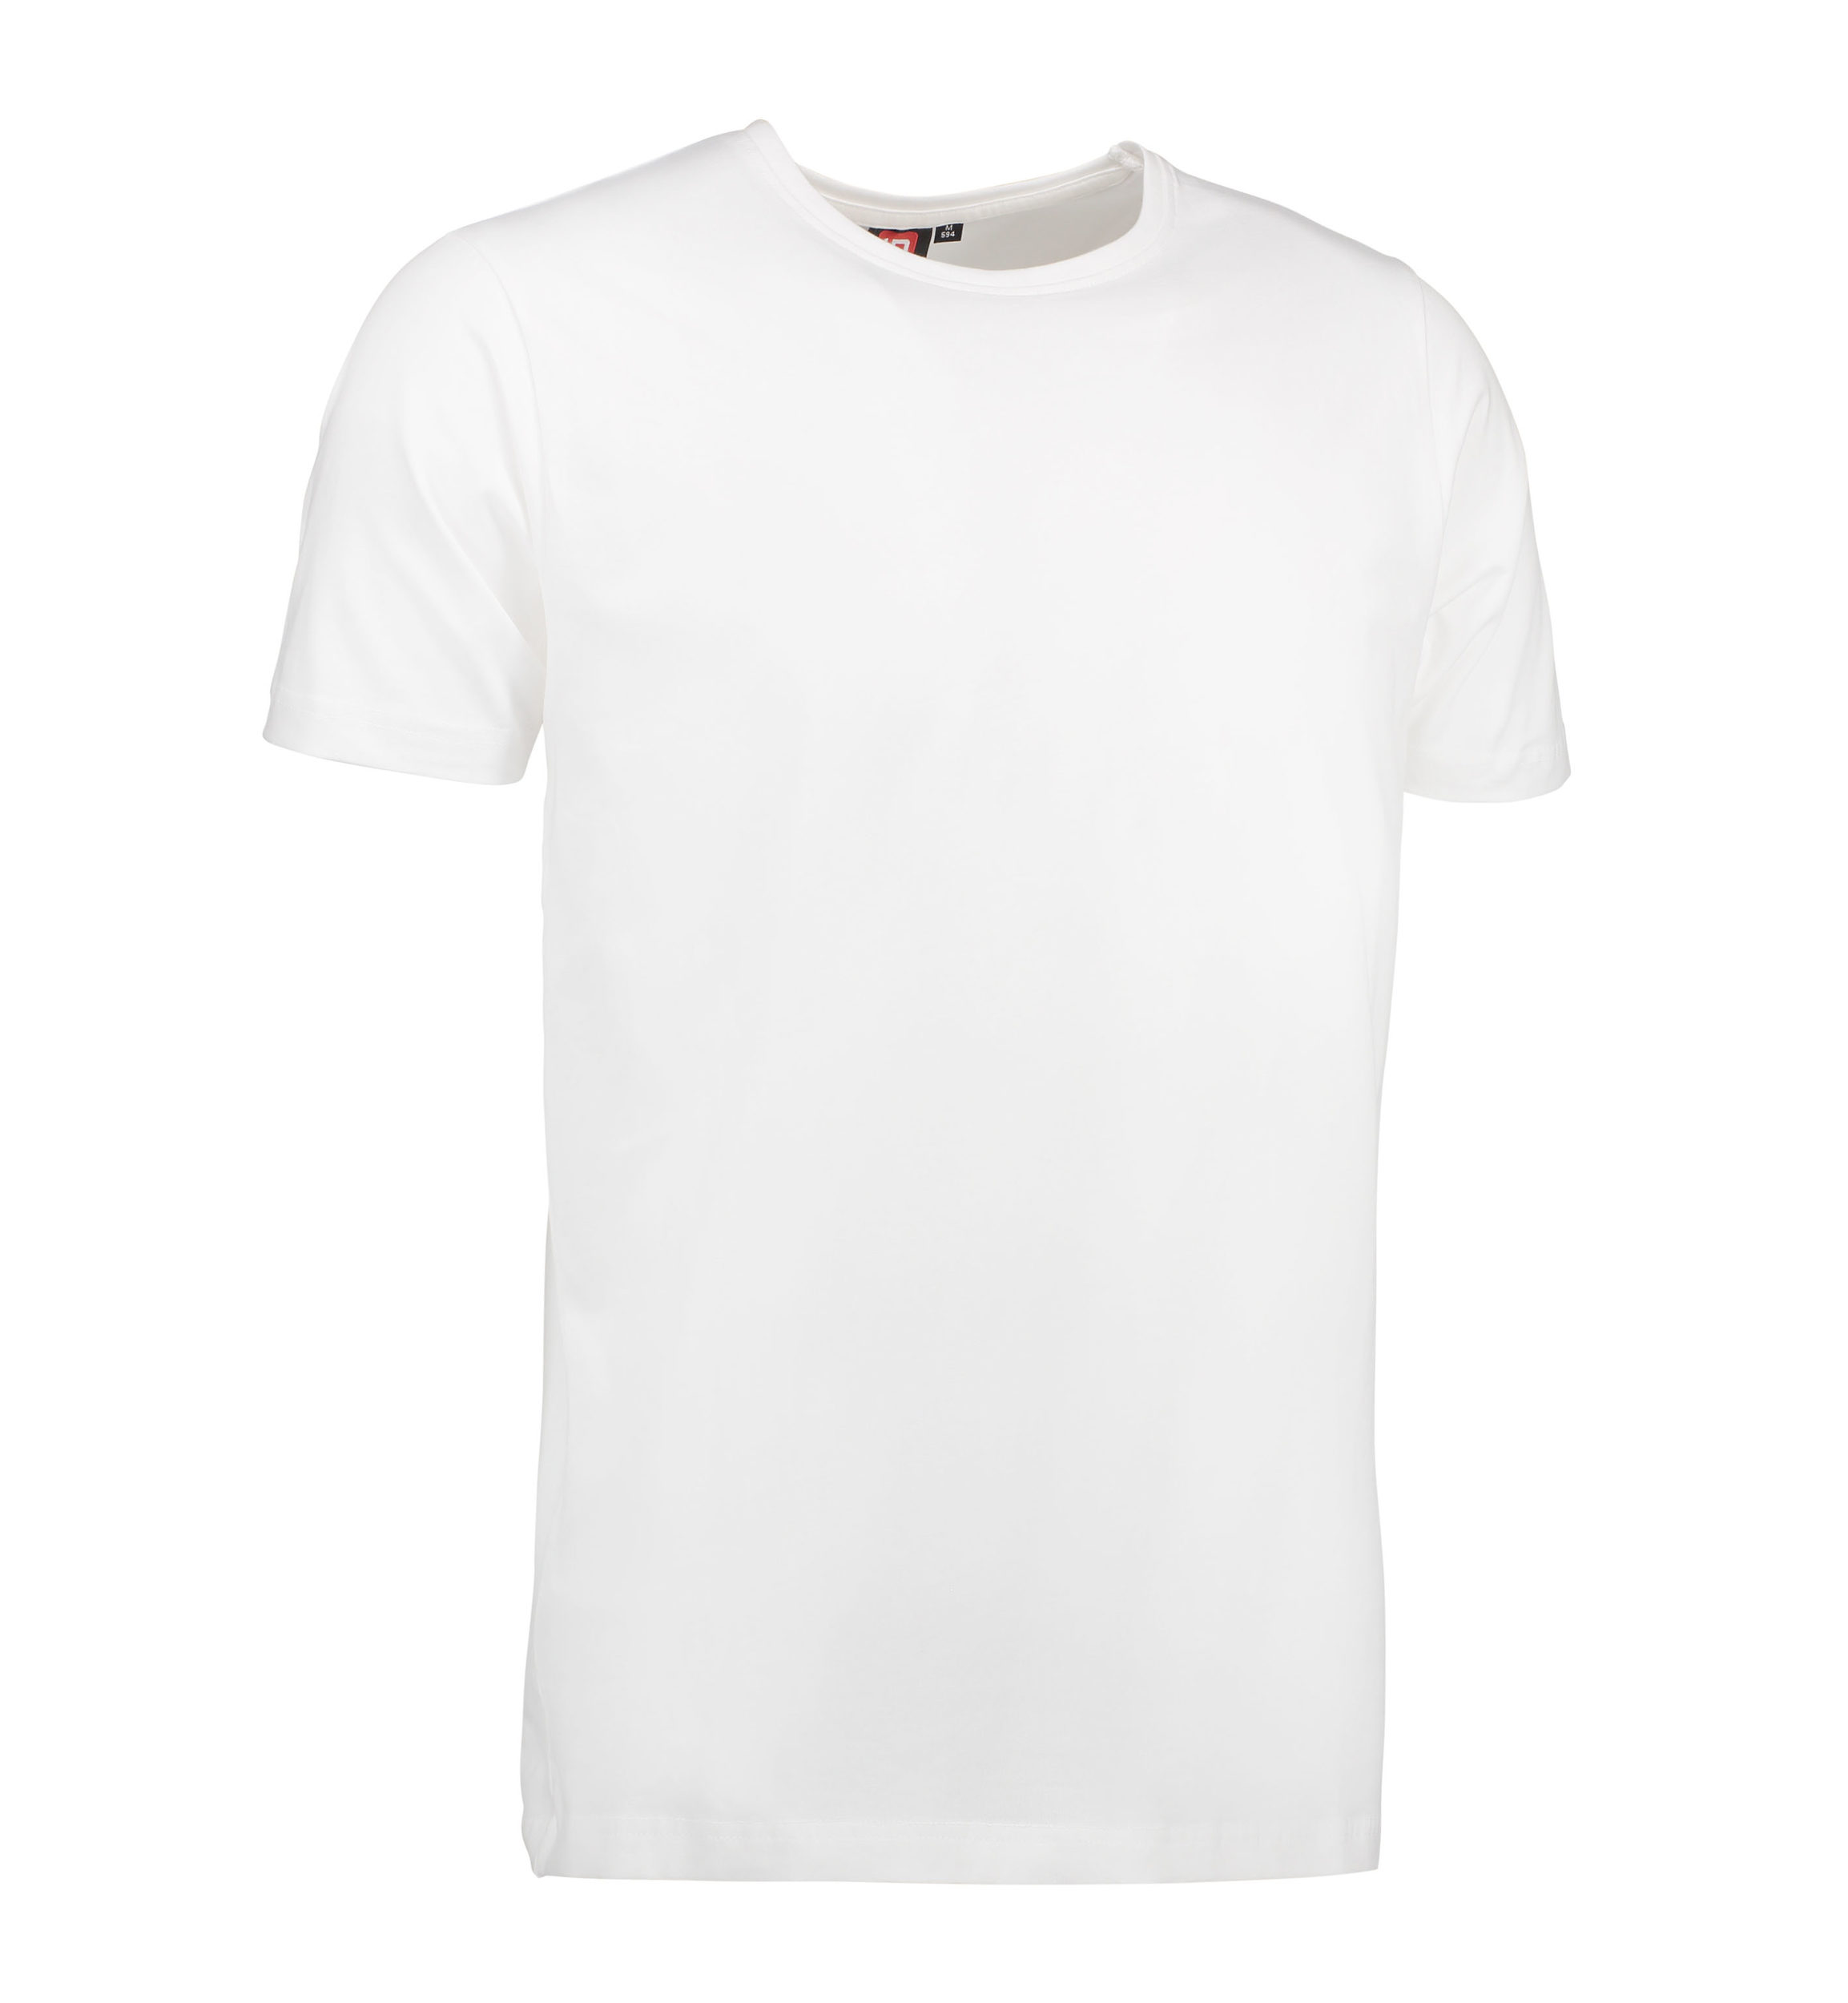 Billede af Stretch t-shirt til mænd i hvid - L hos Sygeplejebutikken.dk